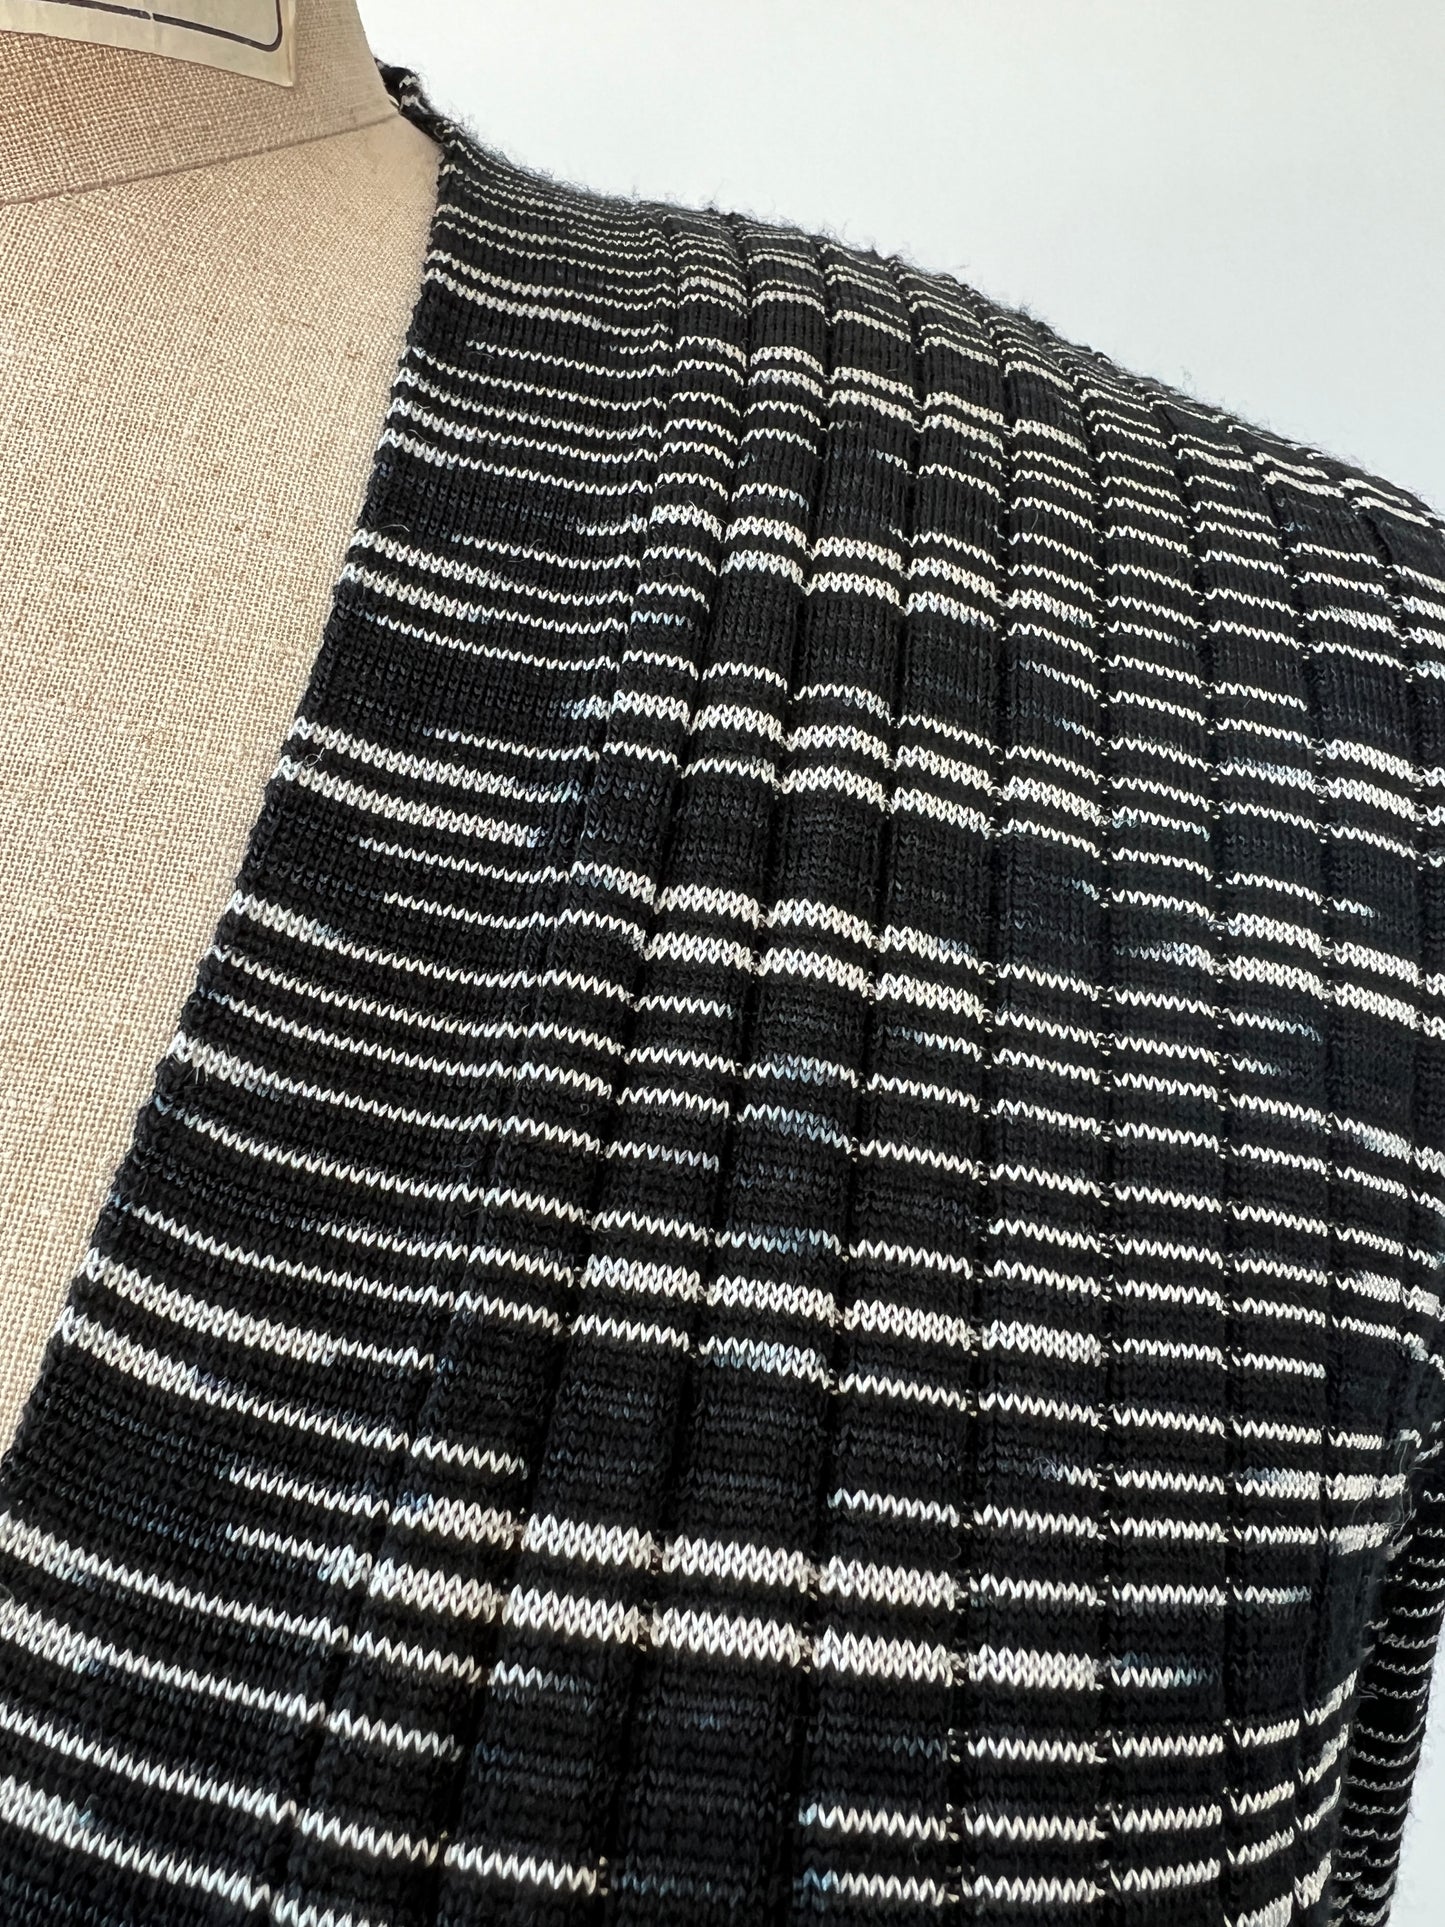 Veste luxueuse en tricot à rayures noir et blanc (S)